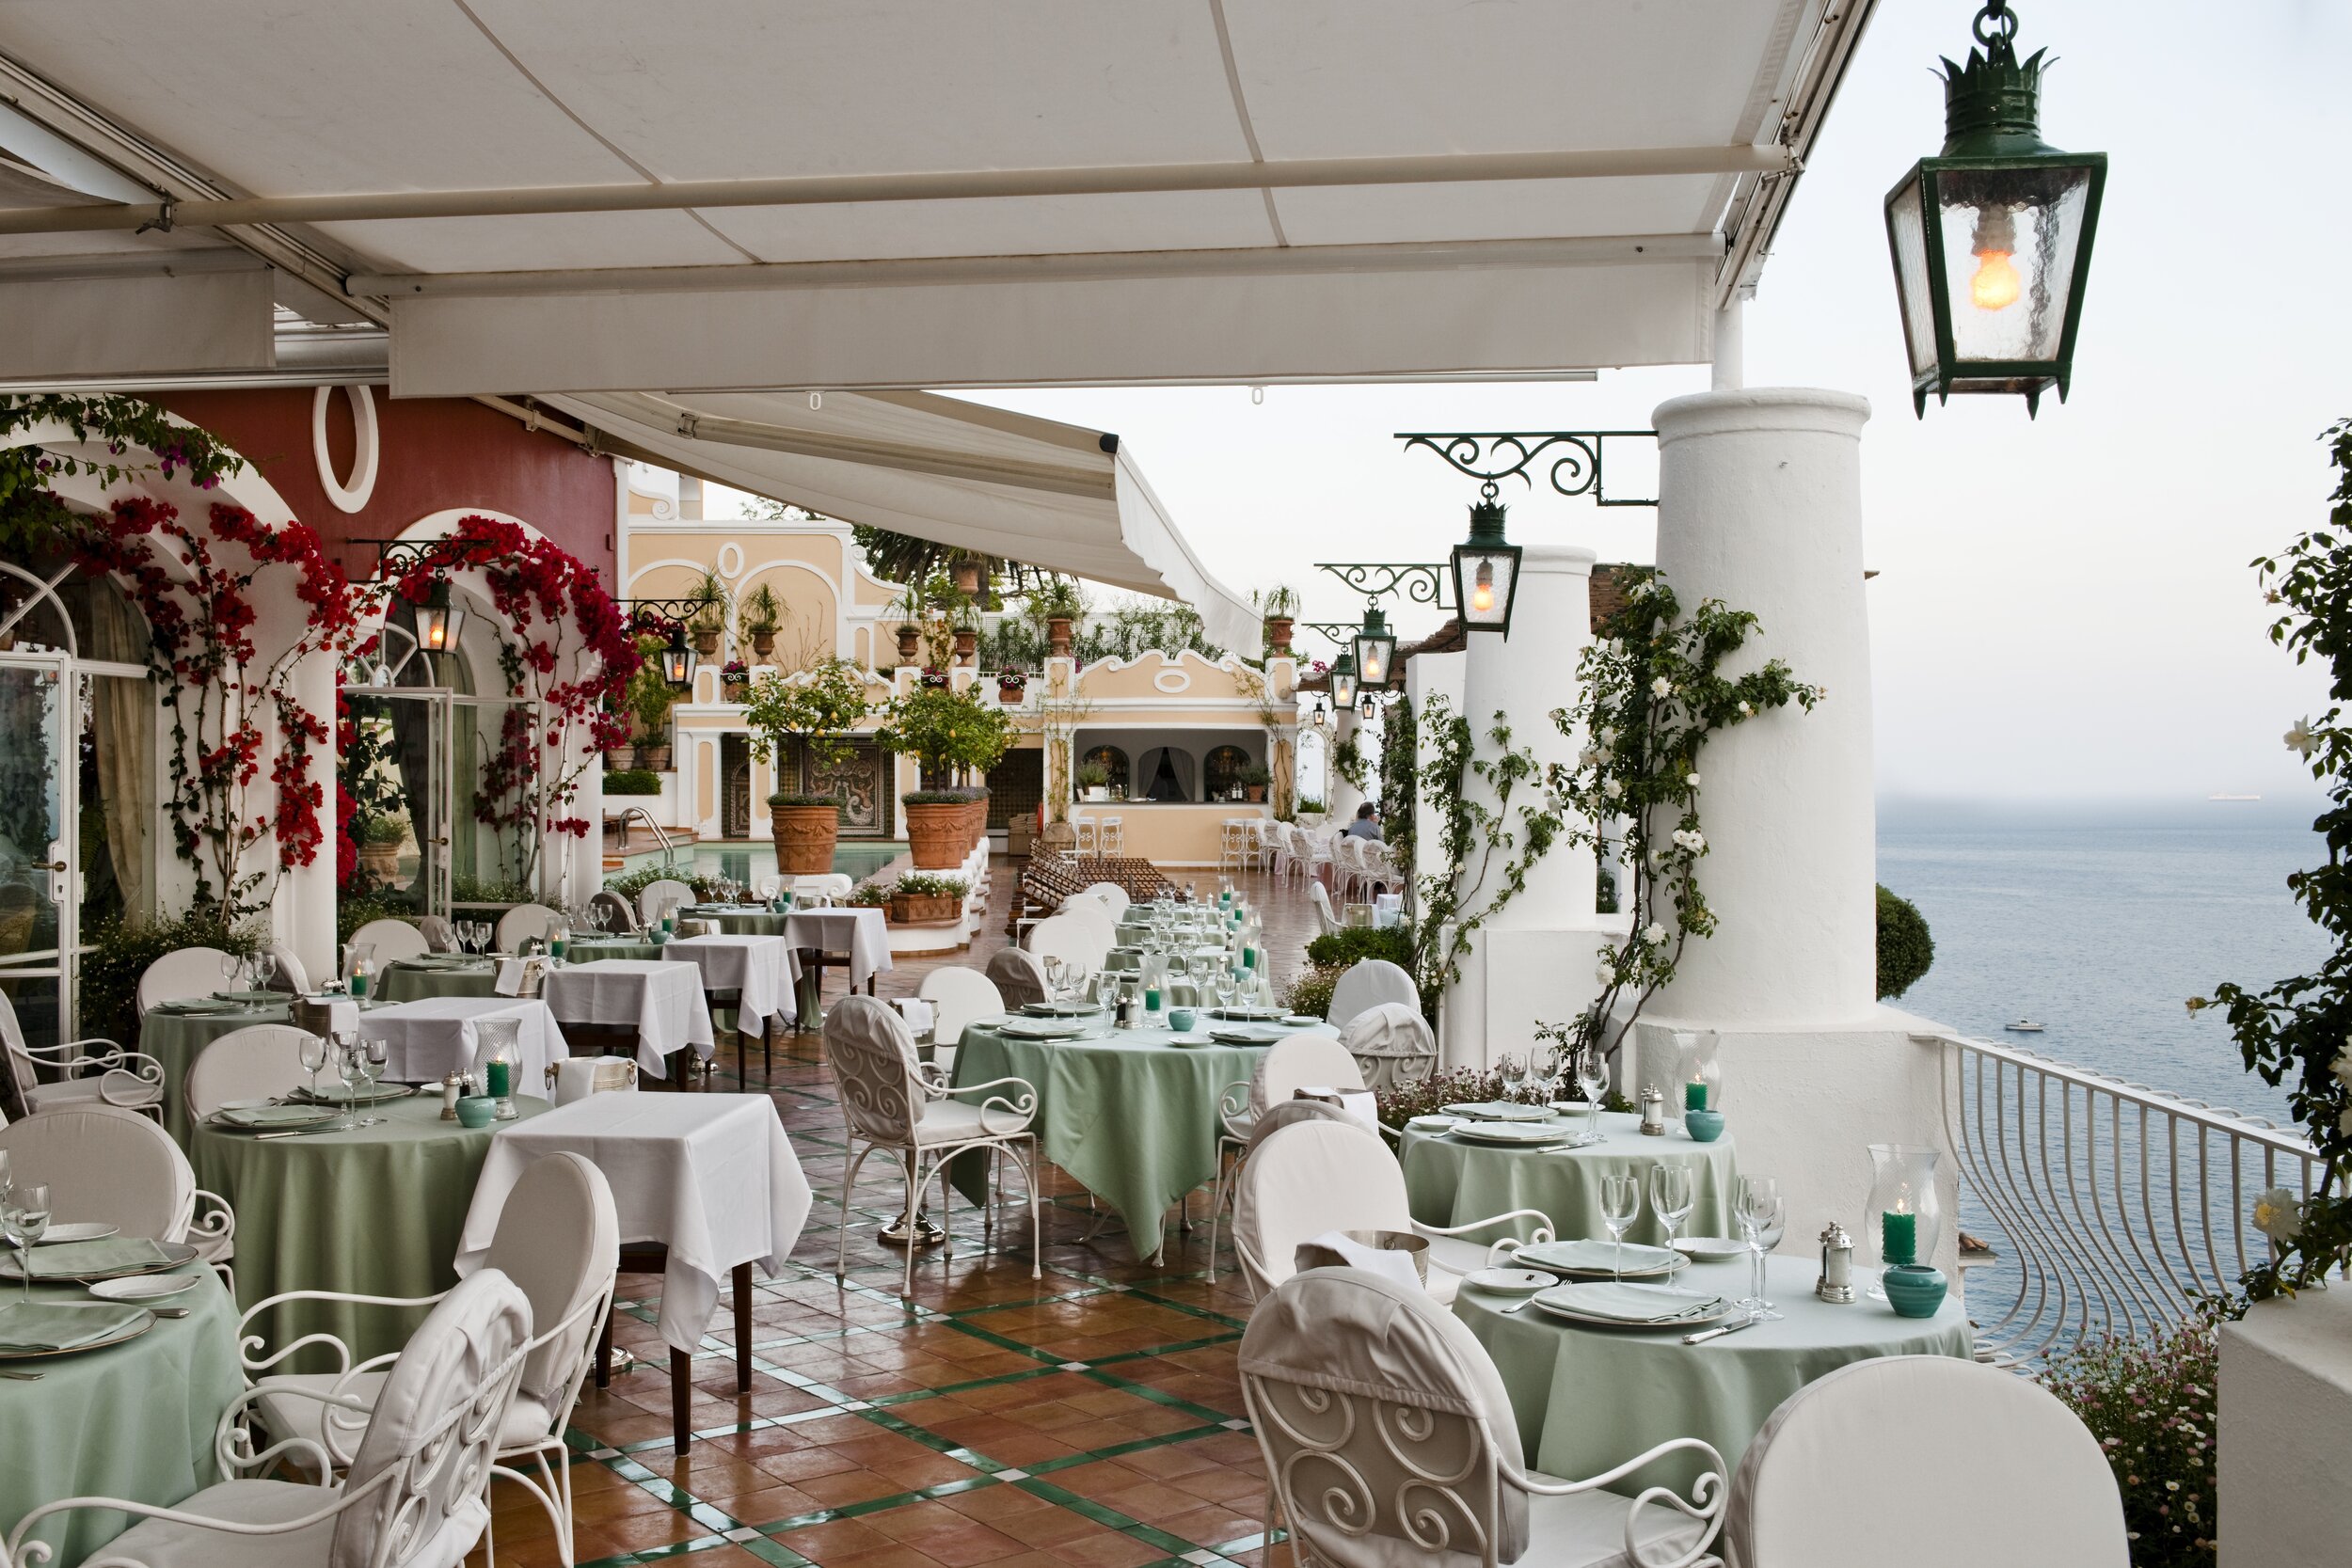 Iconic Boutique Hotel Le Sirenuse, Positano